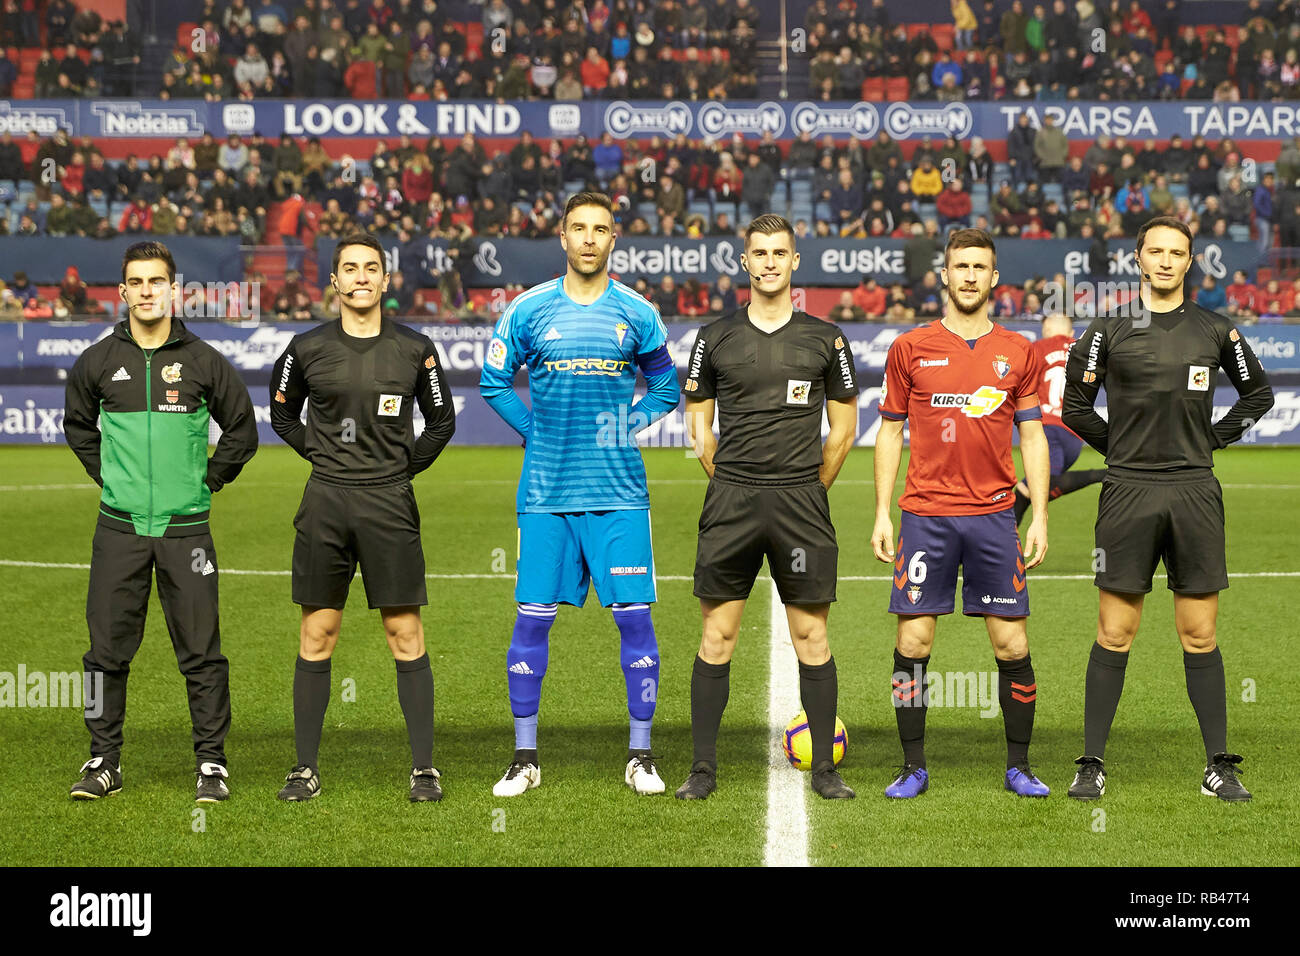 Los capitanes de ambos equipos y los 3 árbitros son vistos antes de la liga española de fútbol de la Liga el partido entre el CA Osasuna y Cádiz CF